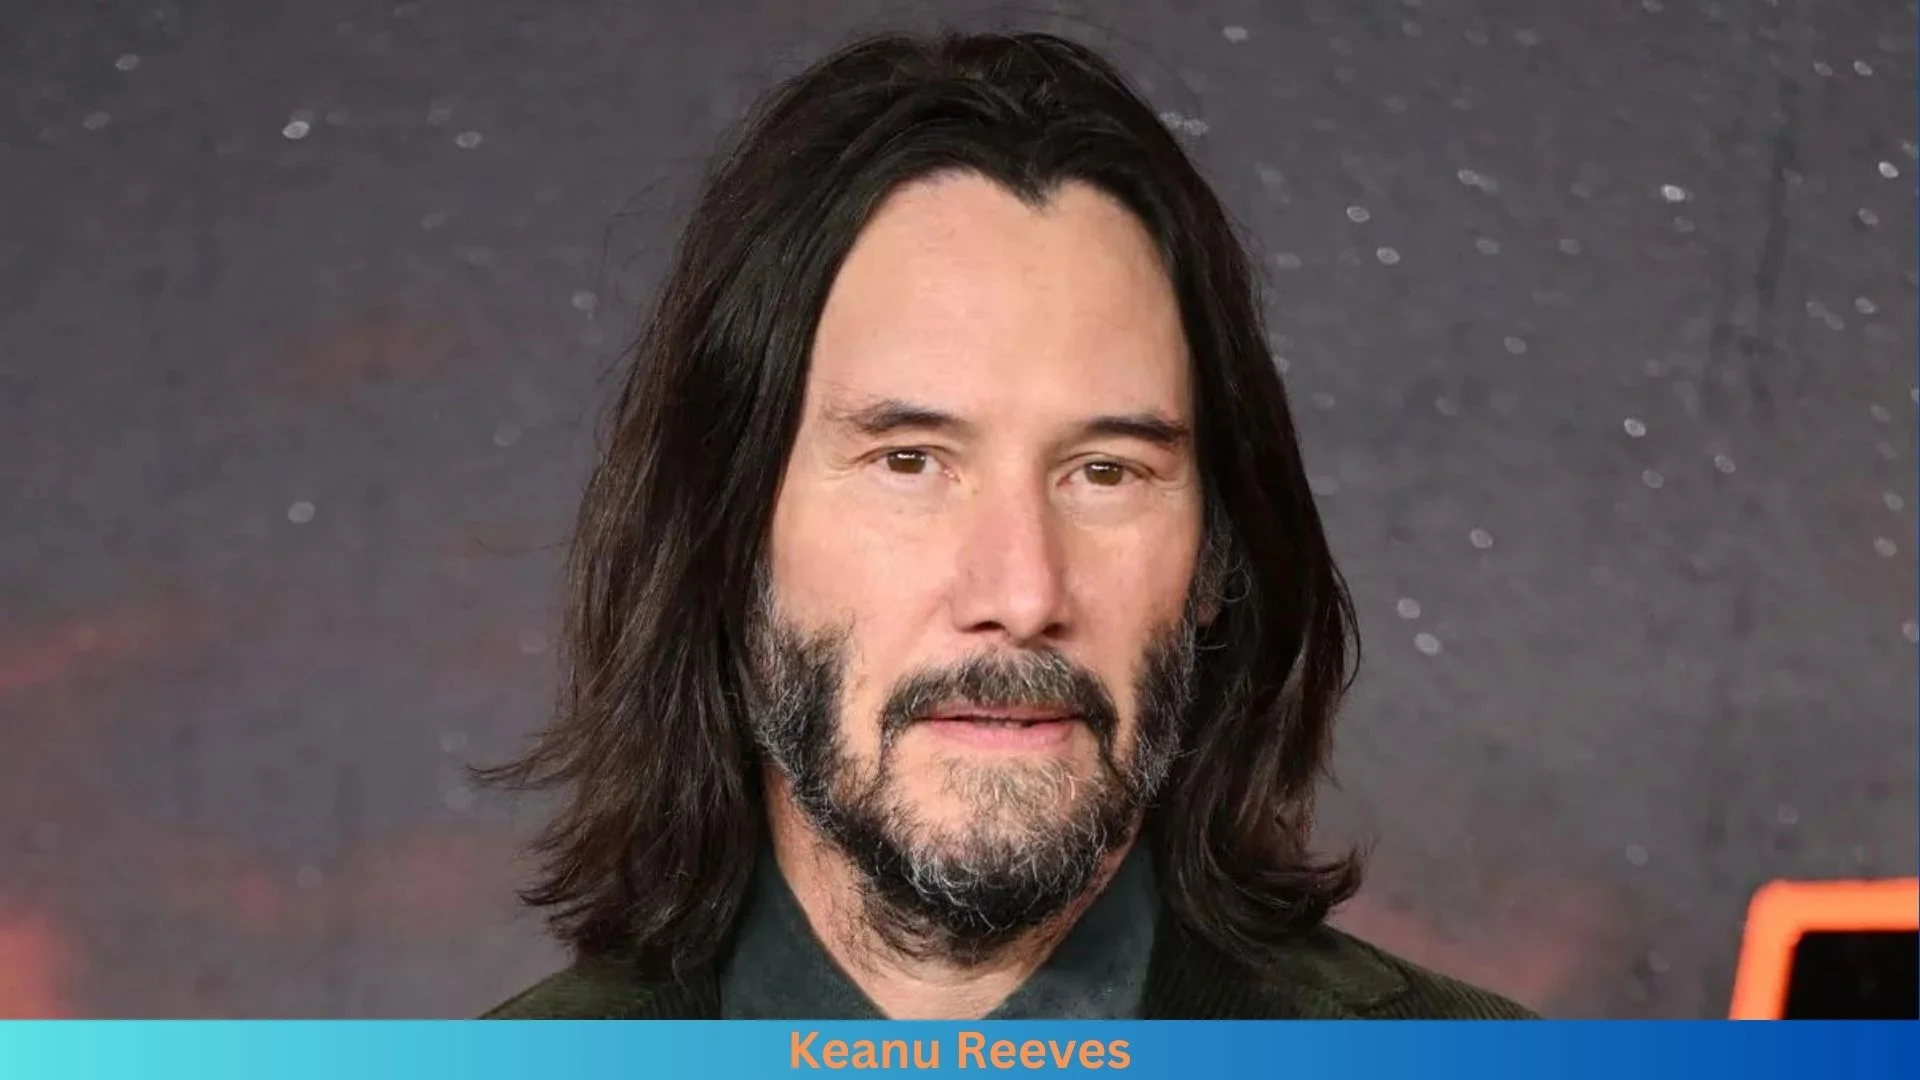 Net Worth of Keanu Reeves